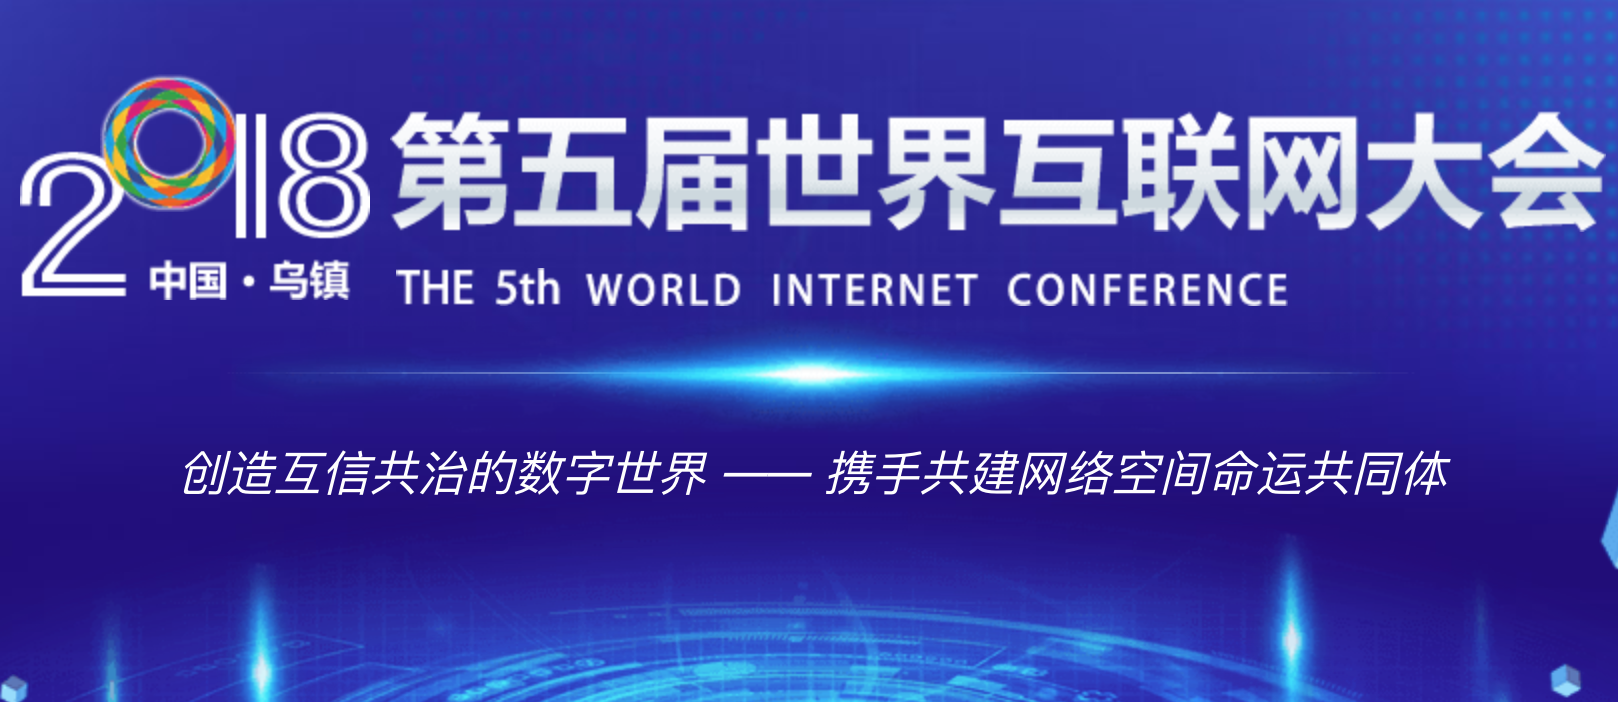 2018中国互联网大会什么时候举行